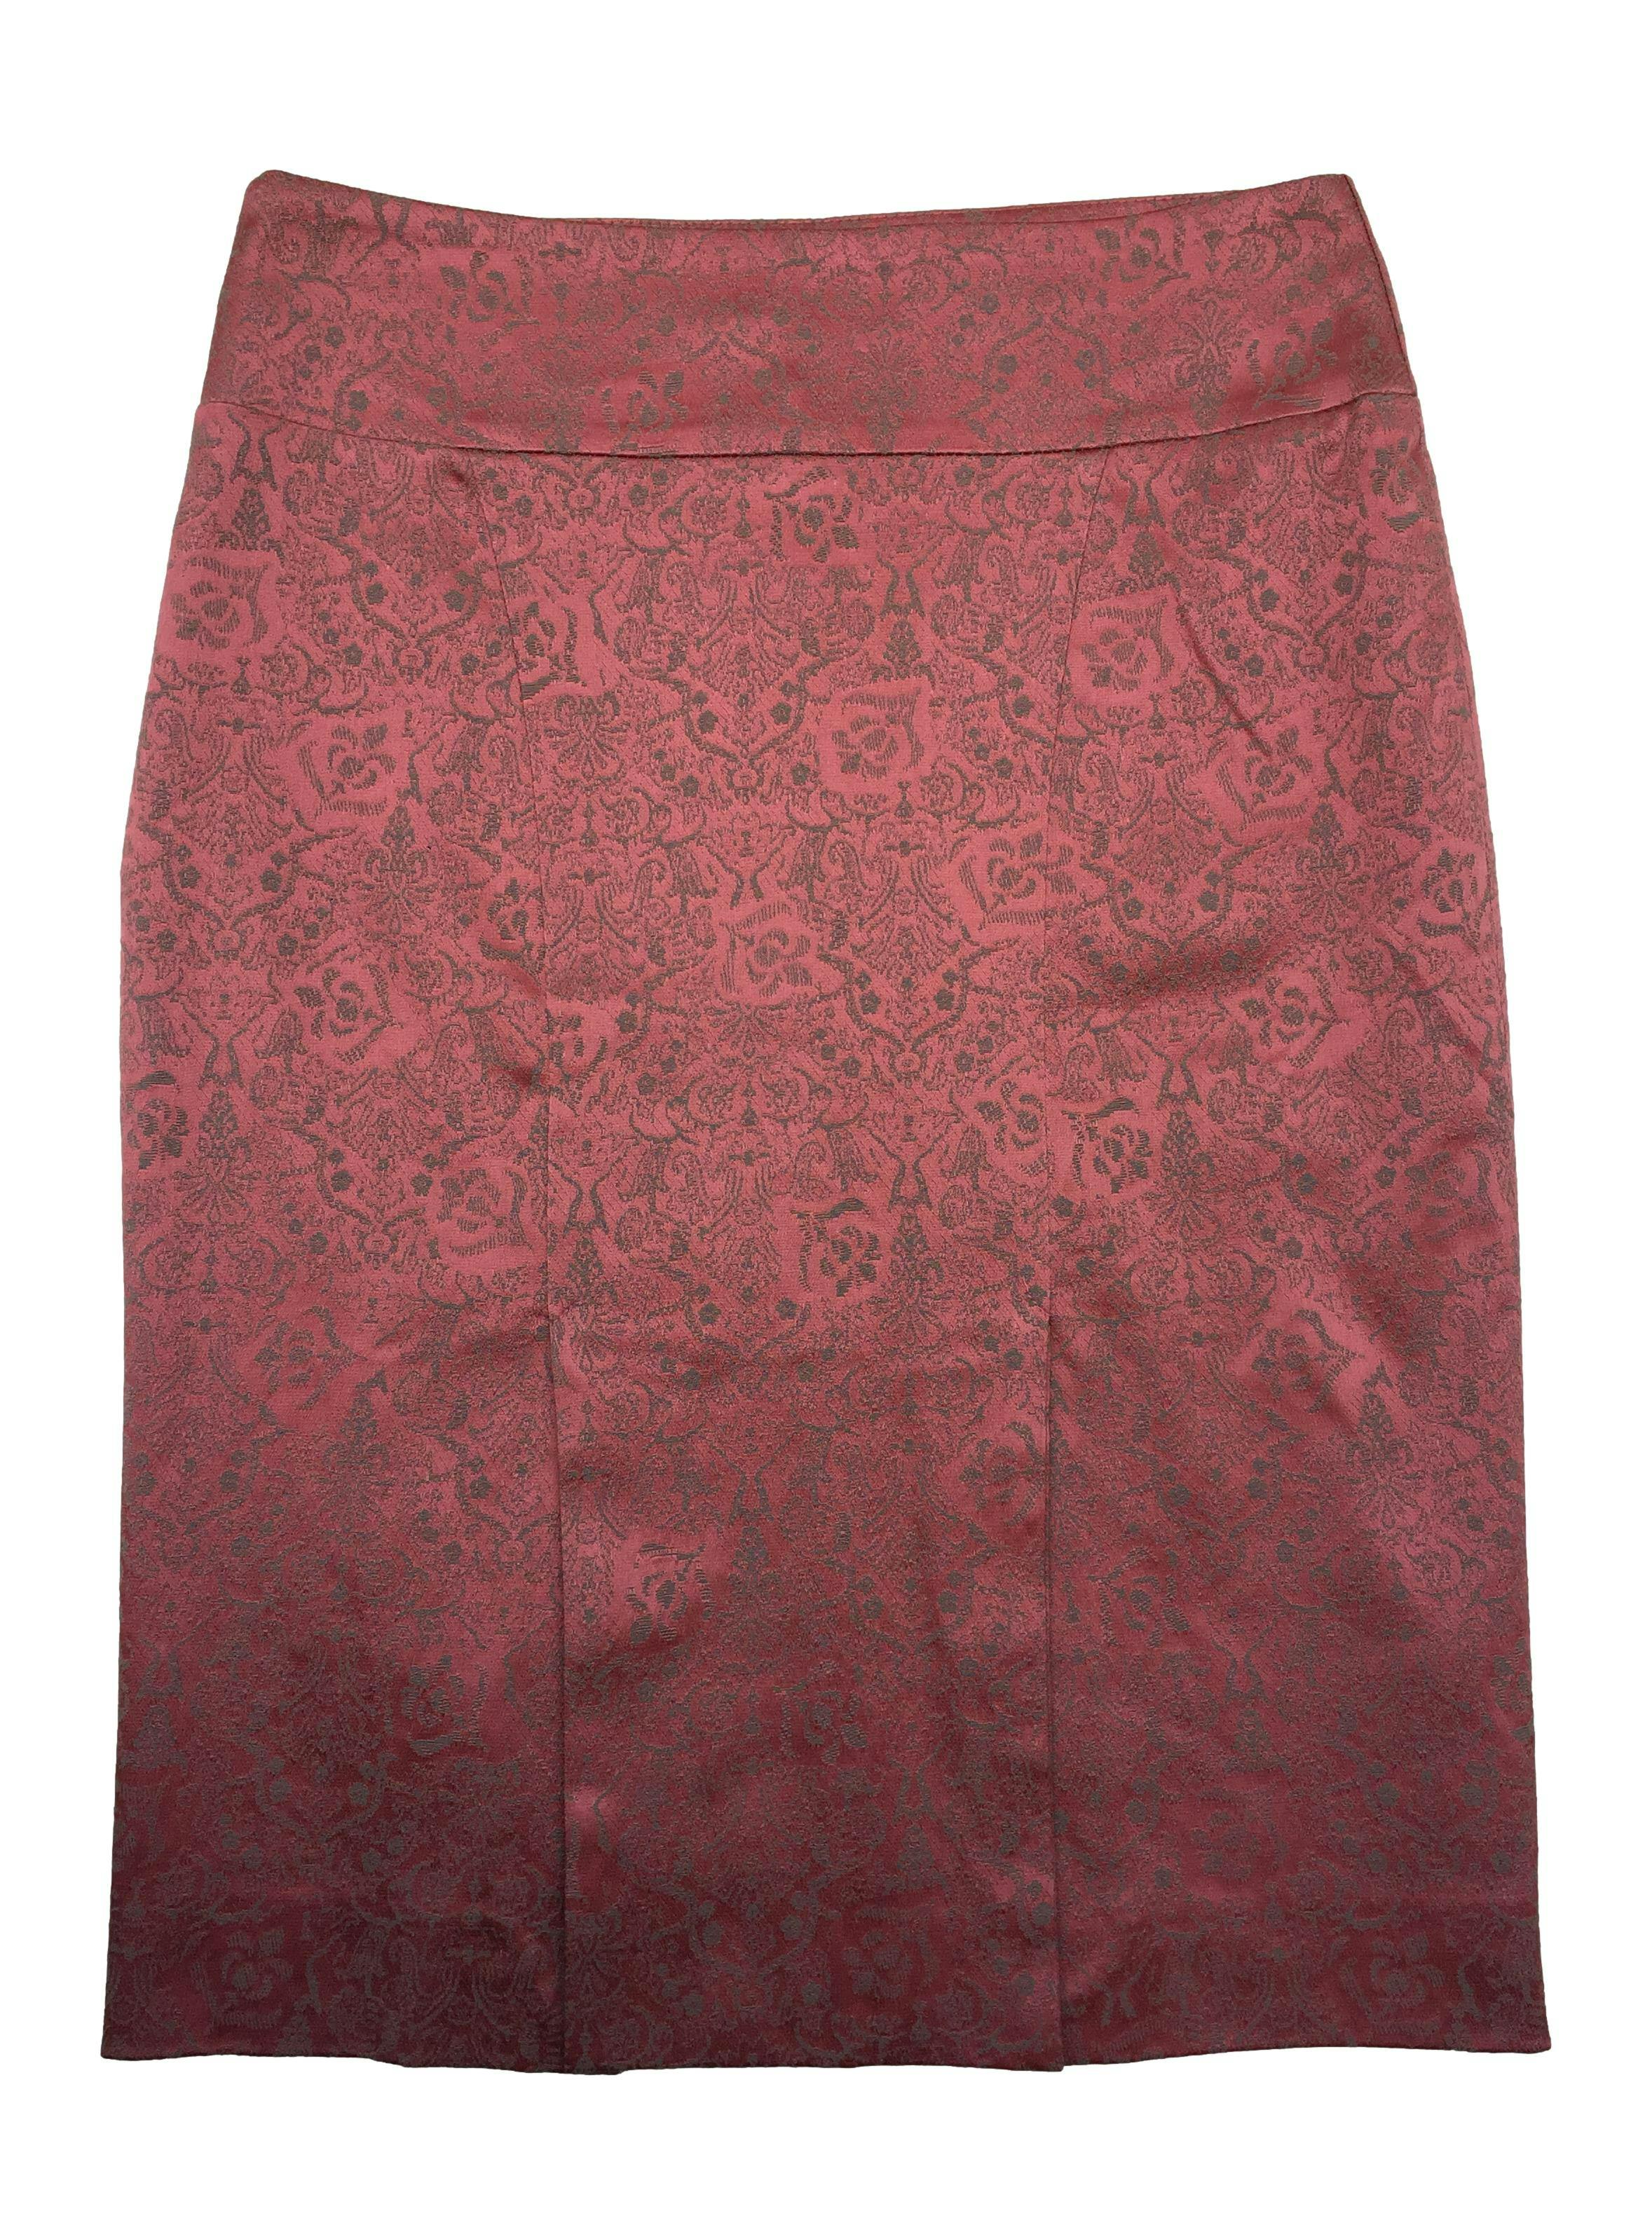 Falda sastre Femme de tela brocada rosa con patrón floral, forro, cierre lateral y abertura posterior. Cintura 76cm, Largo 60cm.